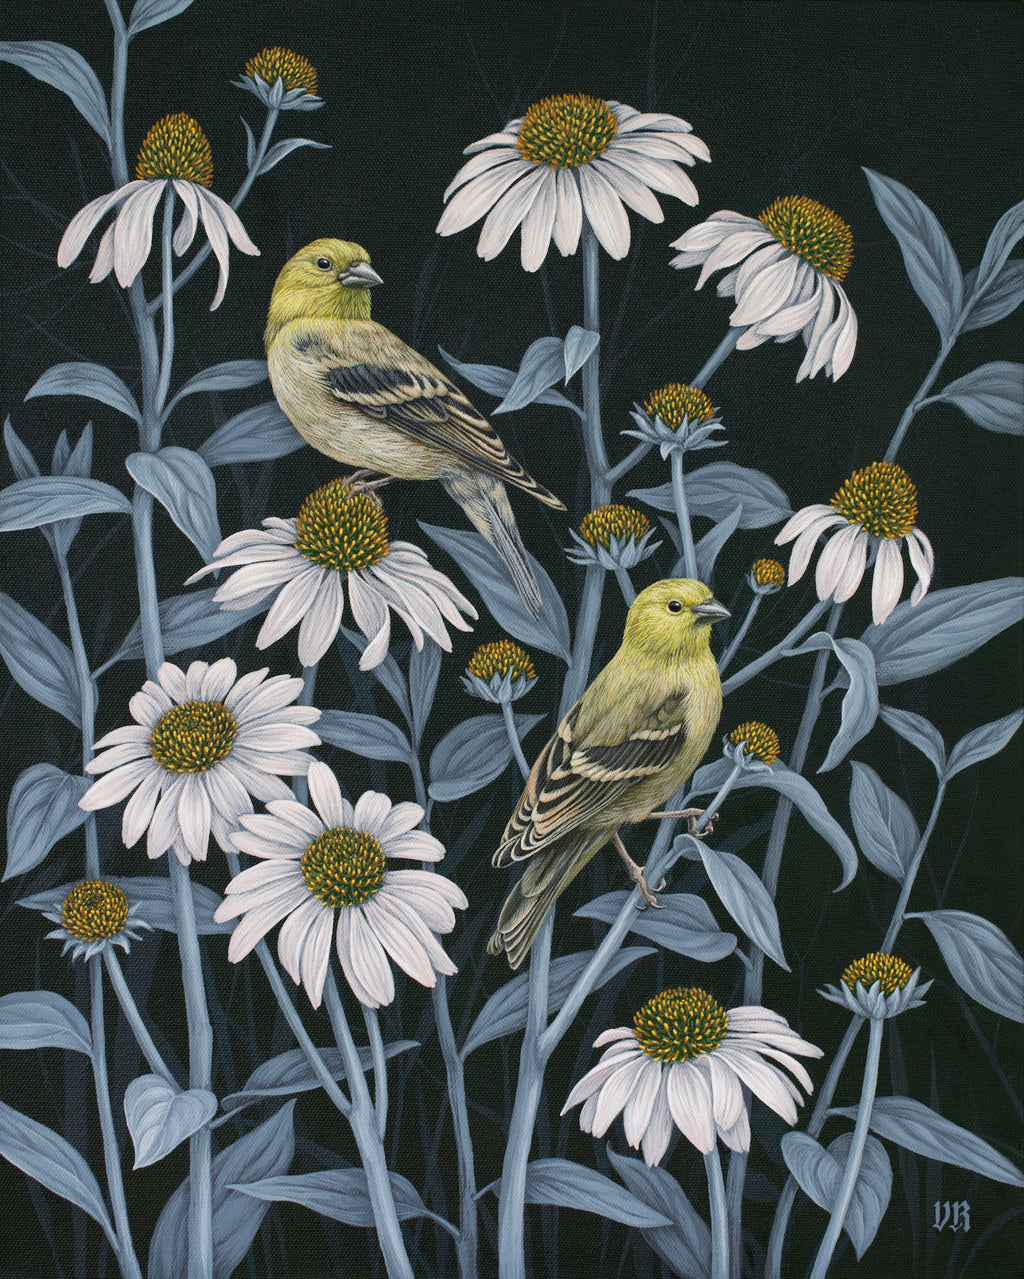 Vasilisa Romanenko - Finches and Coneflowers